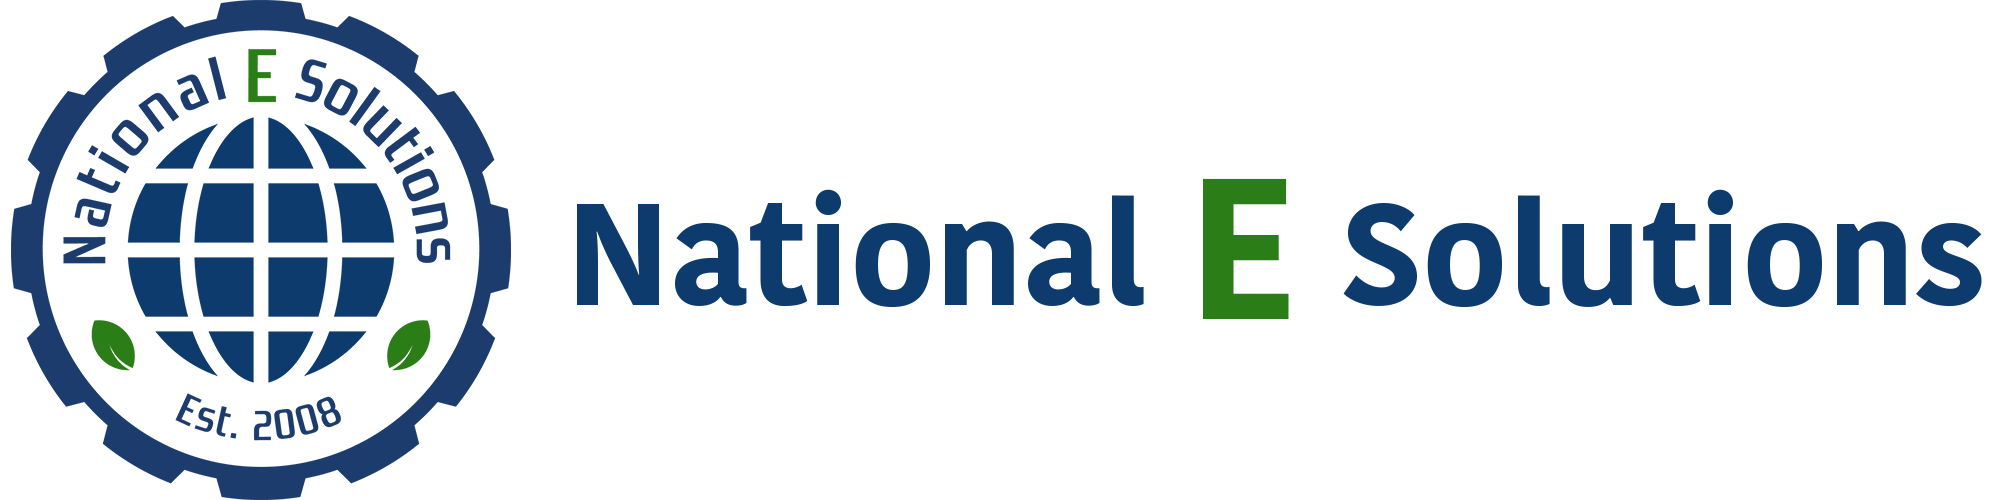 National E Solutions Logo